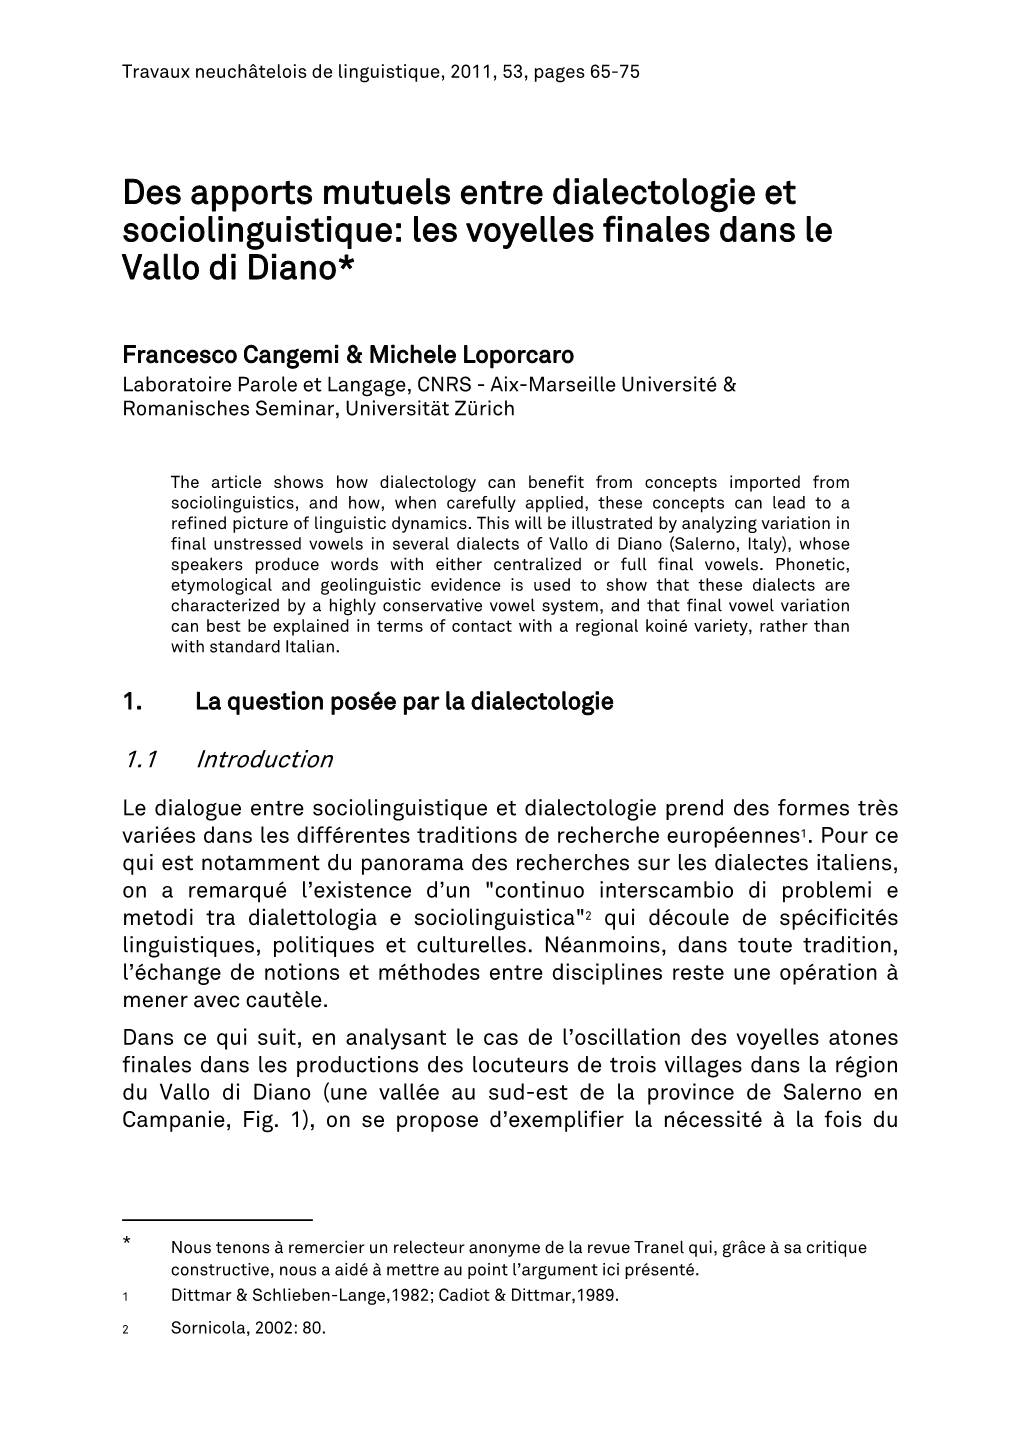 Des Apports Mutuels Entre Dialectologie Et Sociolinguistique: Les Voyelles Finales Dans Le Vallo Di Diano*